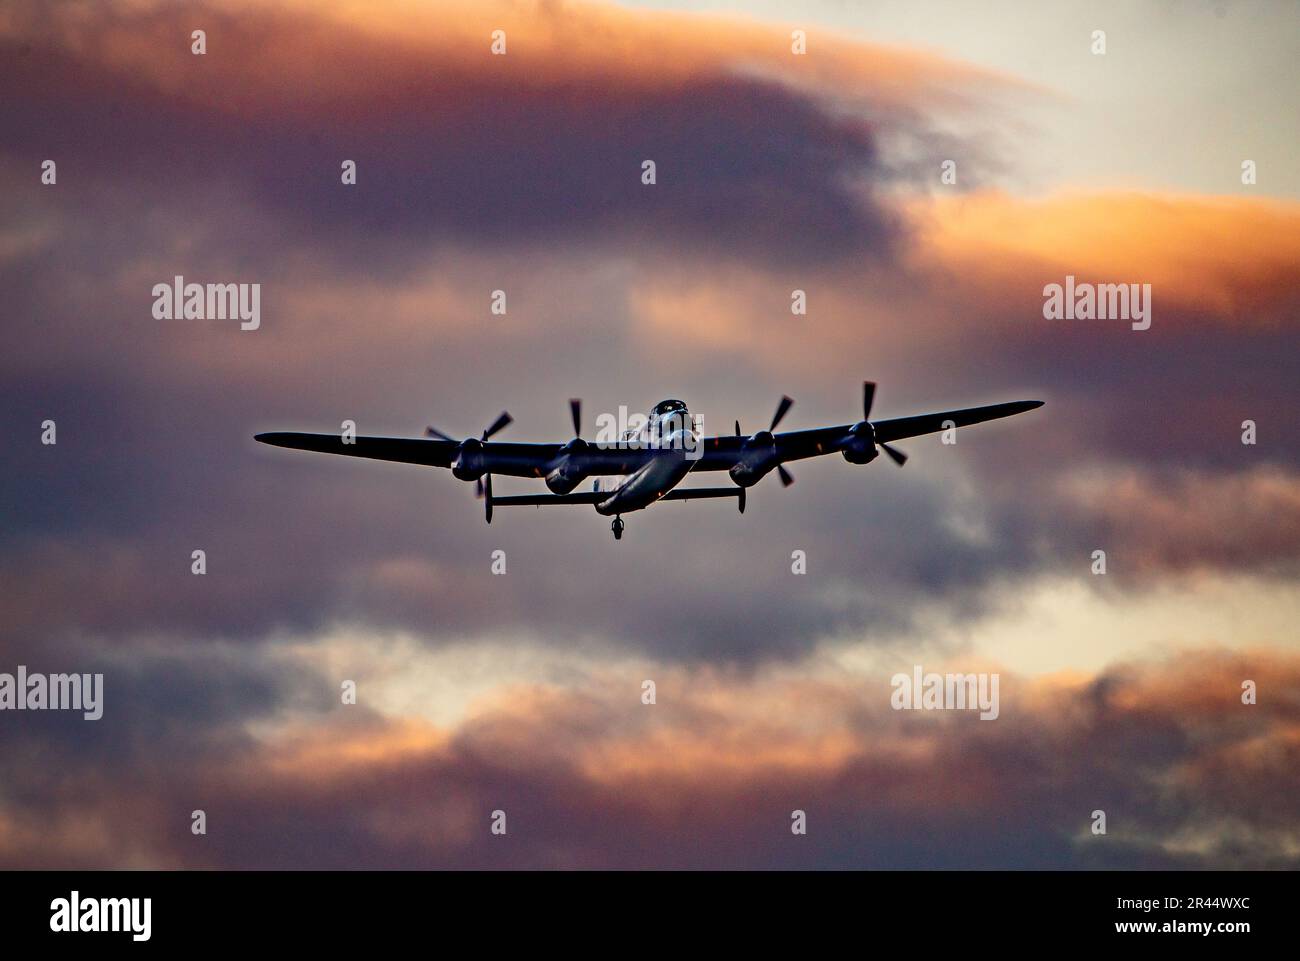 Vol commémoratif de la bataille de Grande-Bretagne commémorant le 80th anniversaire de l'opération chasstaise. Un Avro Lancaster survolant Lincolnshire Aviation Herit Banque D'Images